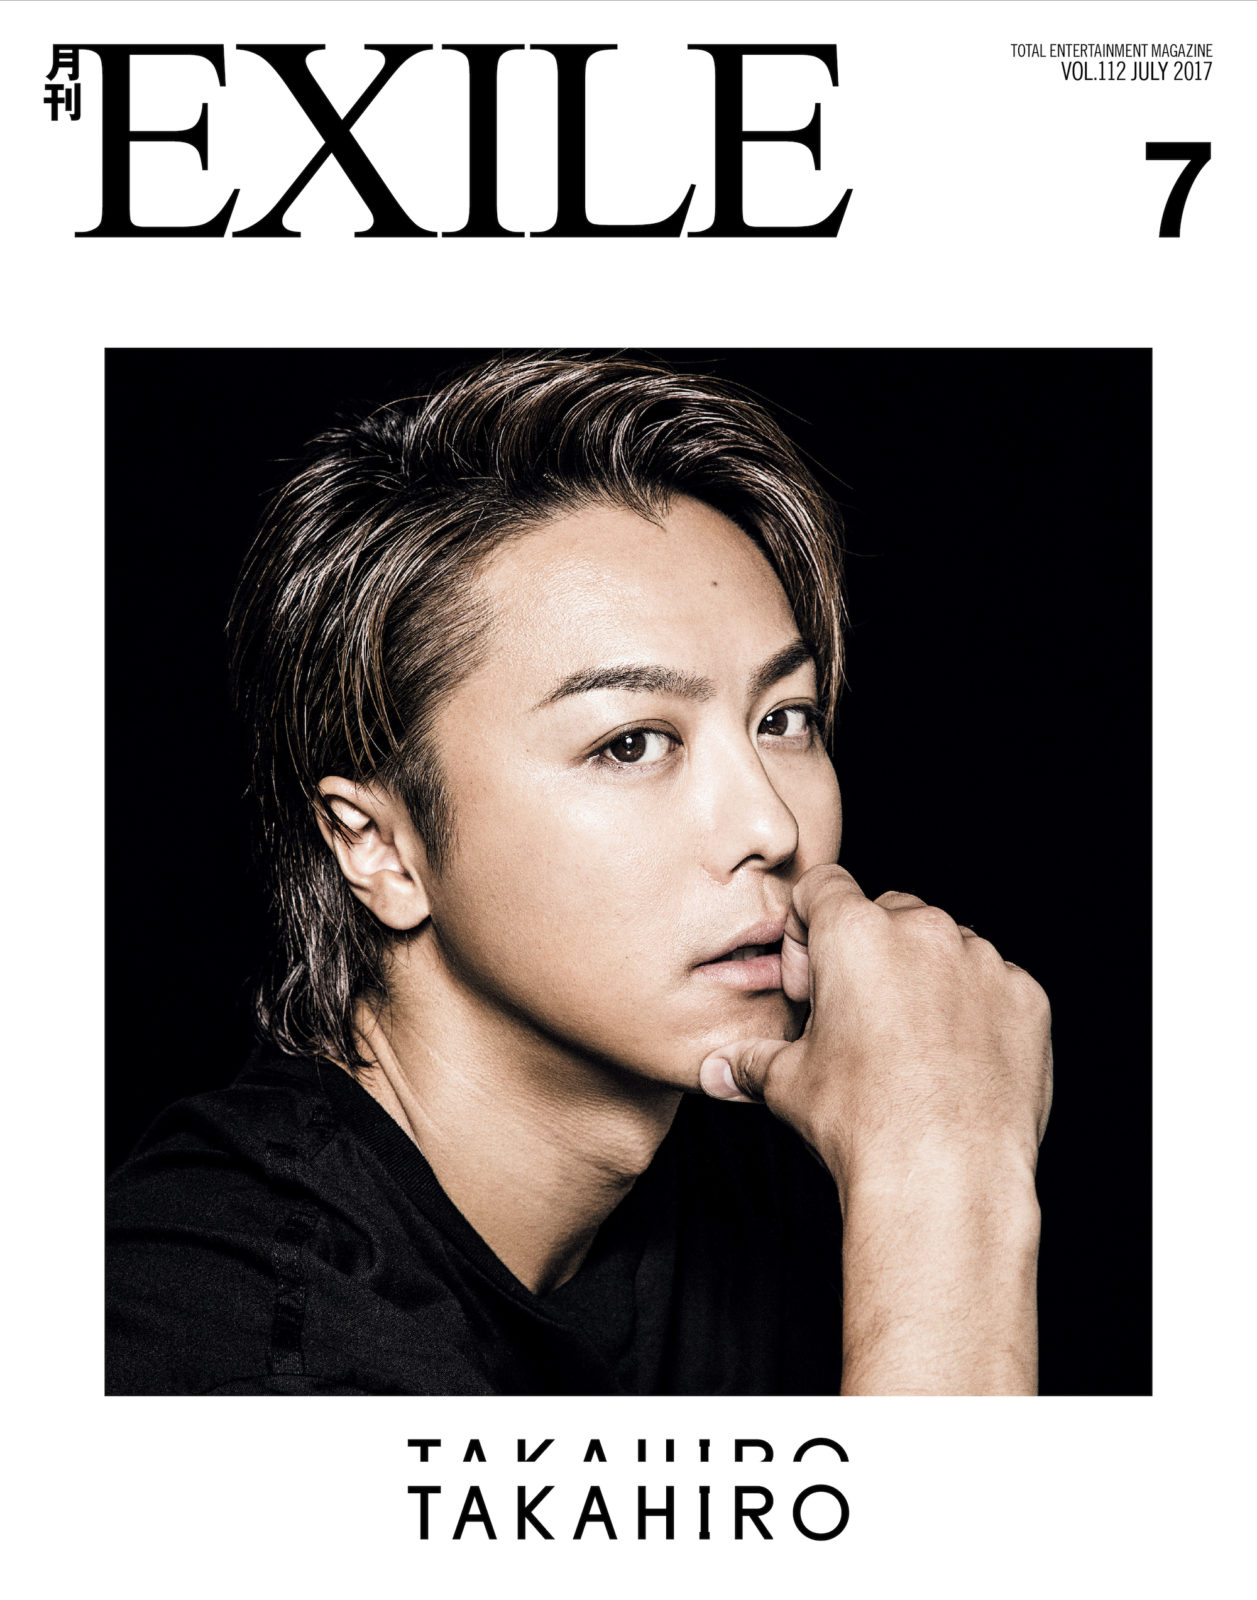 EXILE TAKAHIRO、「月刊EXILE 」約3年ぶりとなる単独カバーで、ファンからは『かっこいい』『ヤバい』の声殺到サムネイル画像!